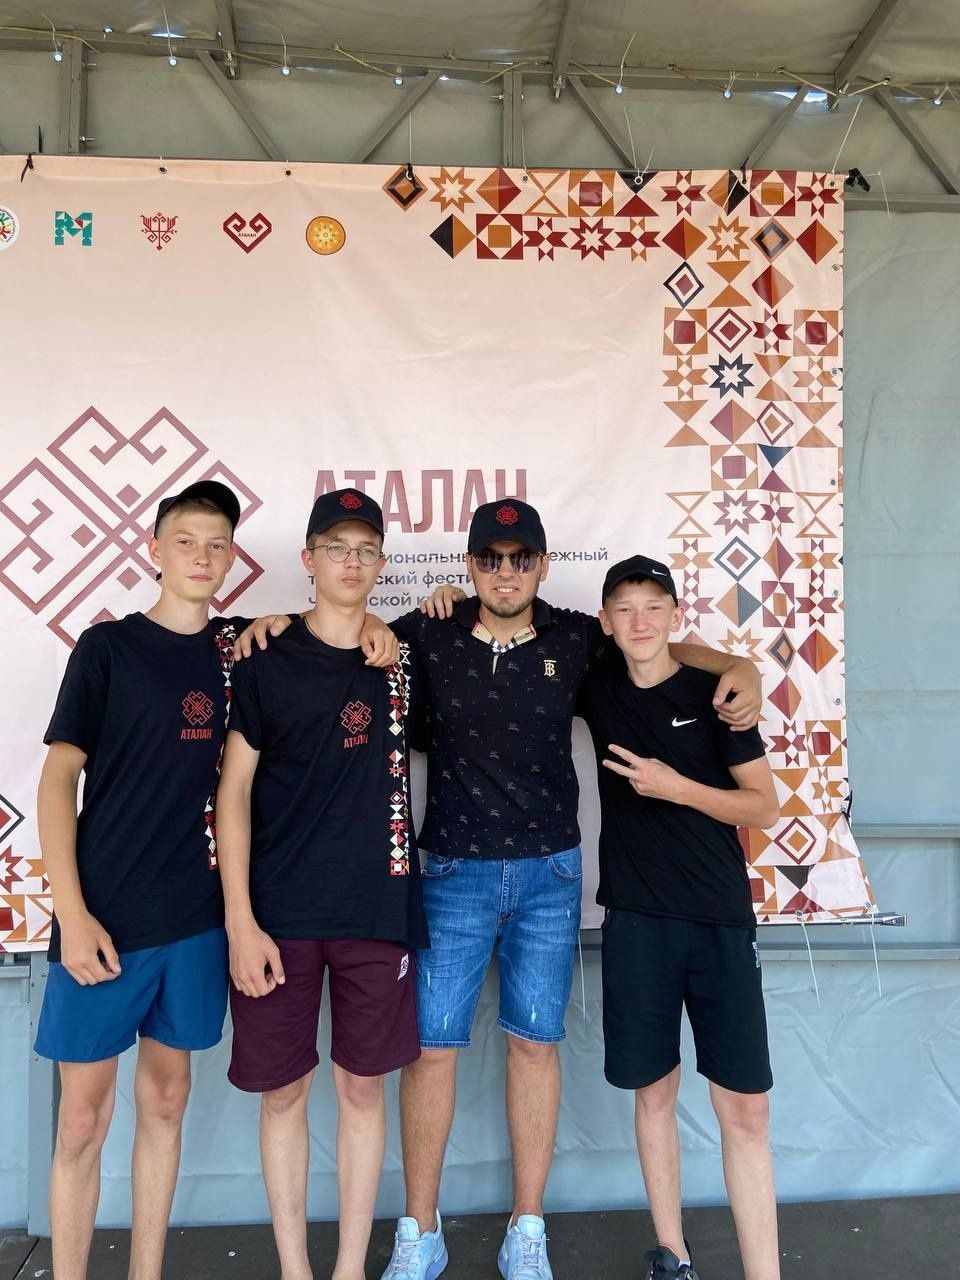 Аксубаевские школьники на фестивале «Аталан» открыли новое в традициях и культуре своего народа